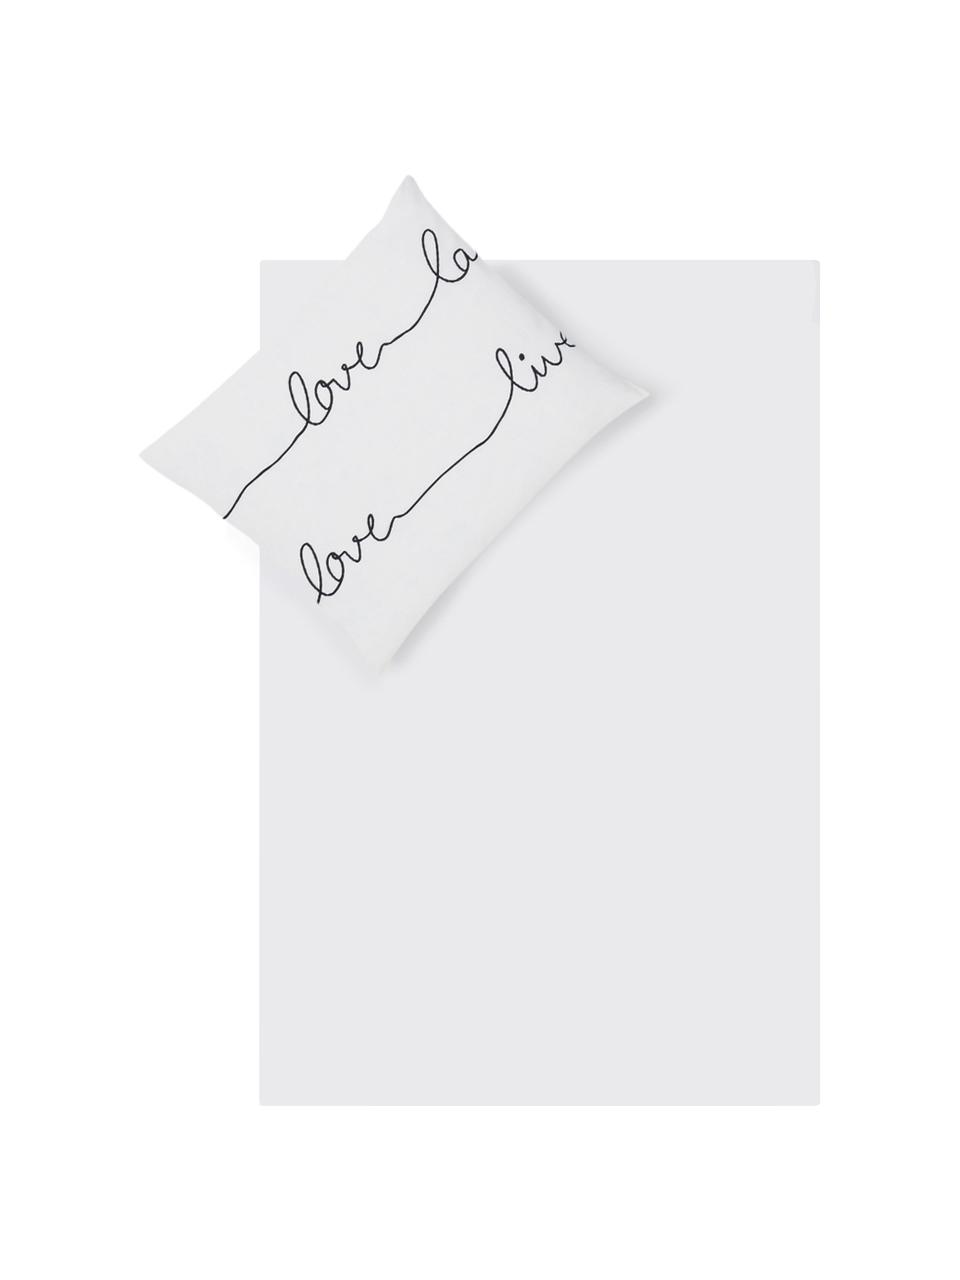 Dubbelzijdig dekbedovertrek Live, Katoen, Bovenzijde: wit, zwart. Onderzijde: wit, 140 x 200 cm + 1 kussenhoes 60 x 70 cm